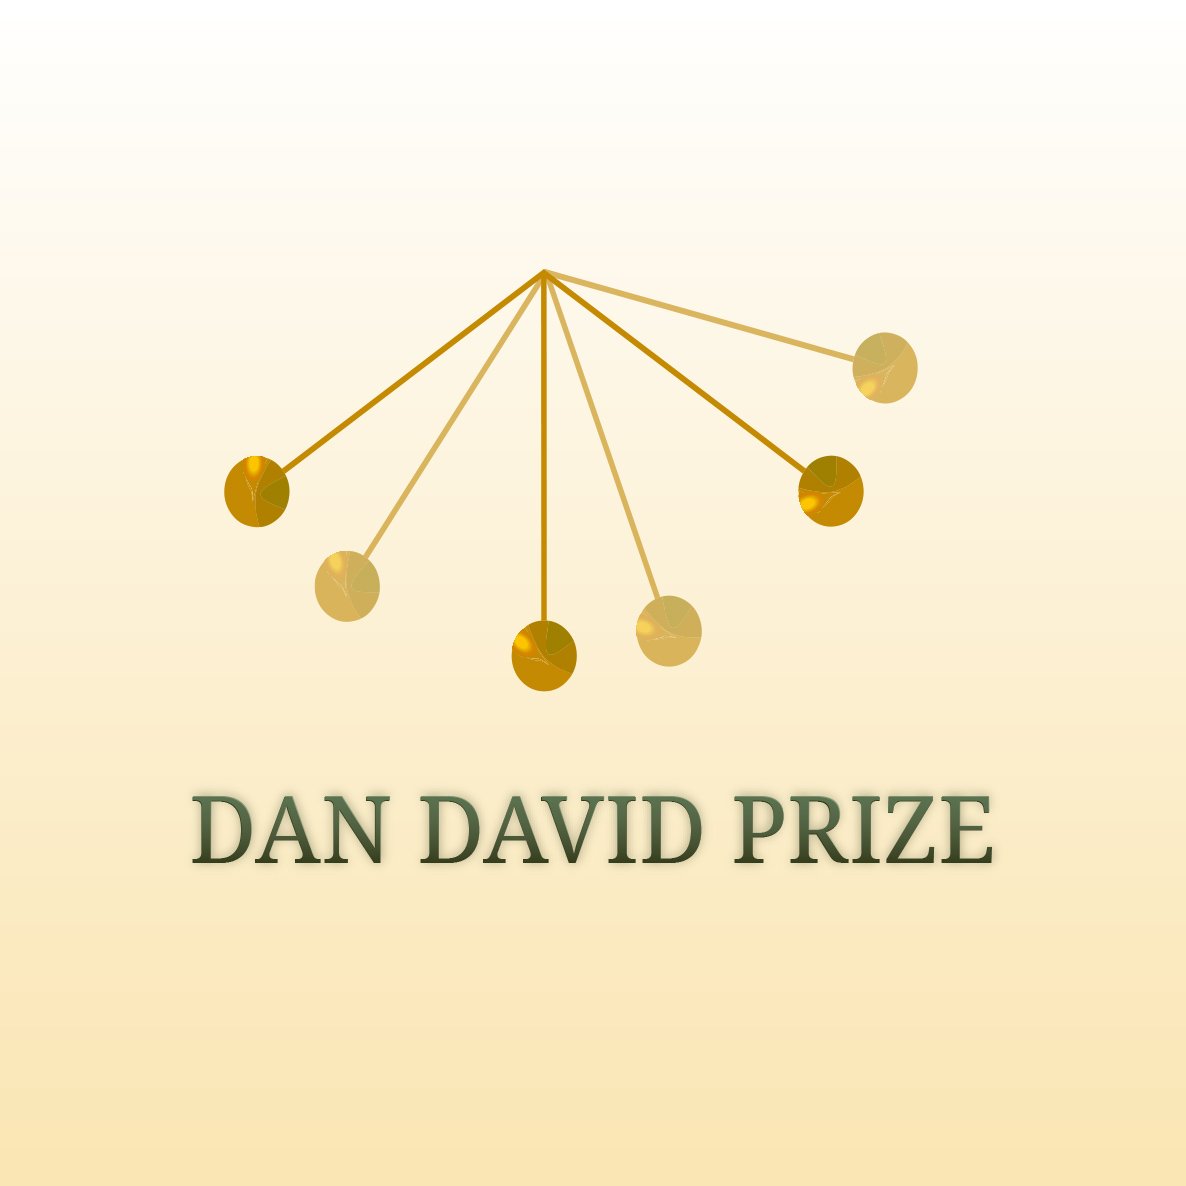 Dan David Prize Awards Scholarships